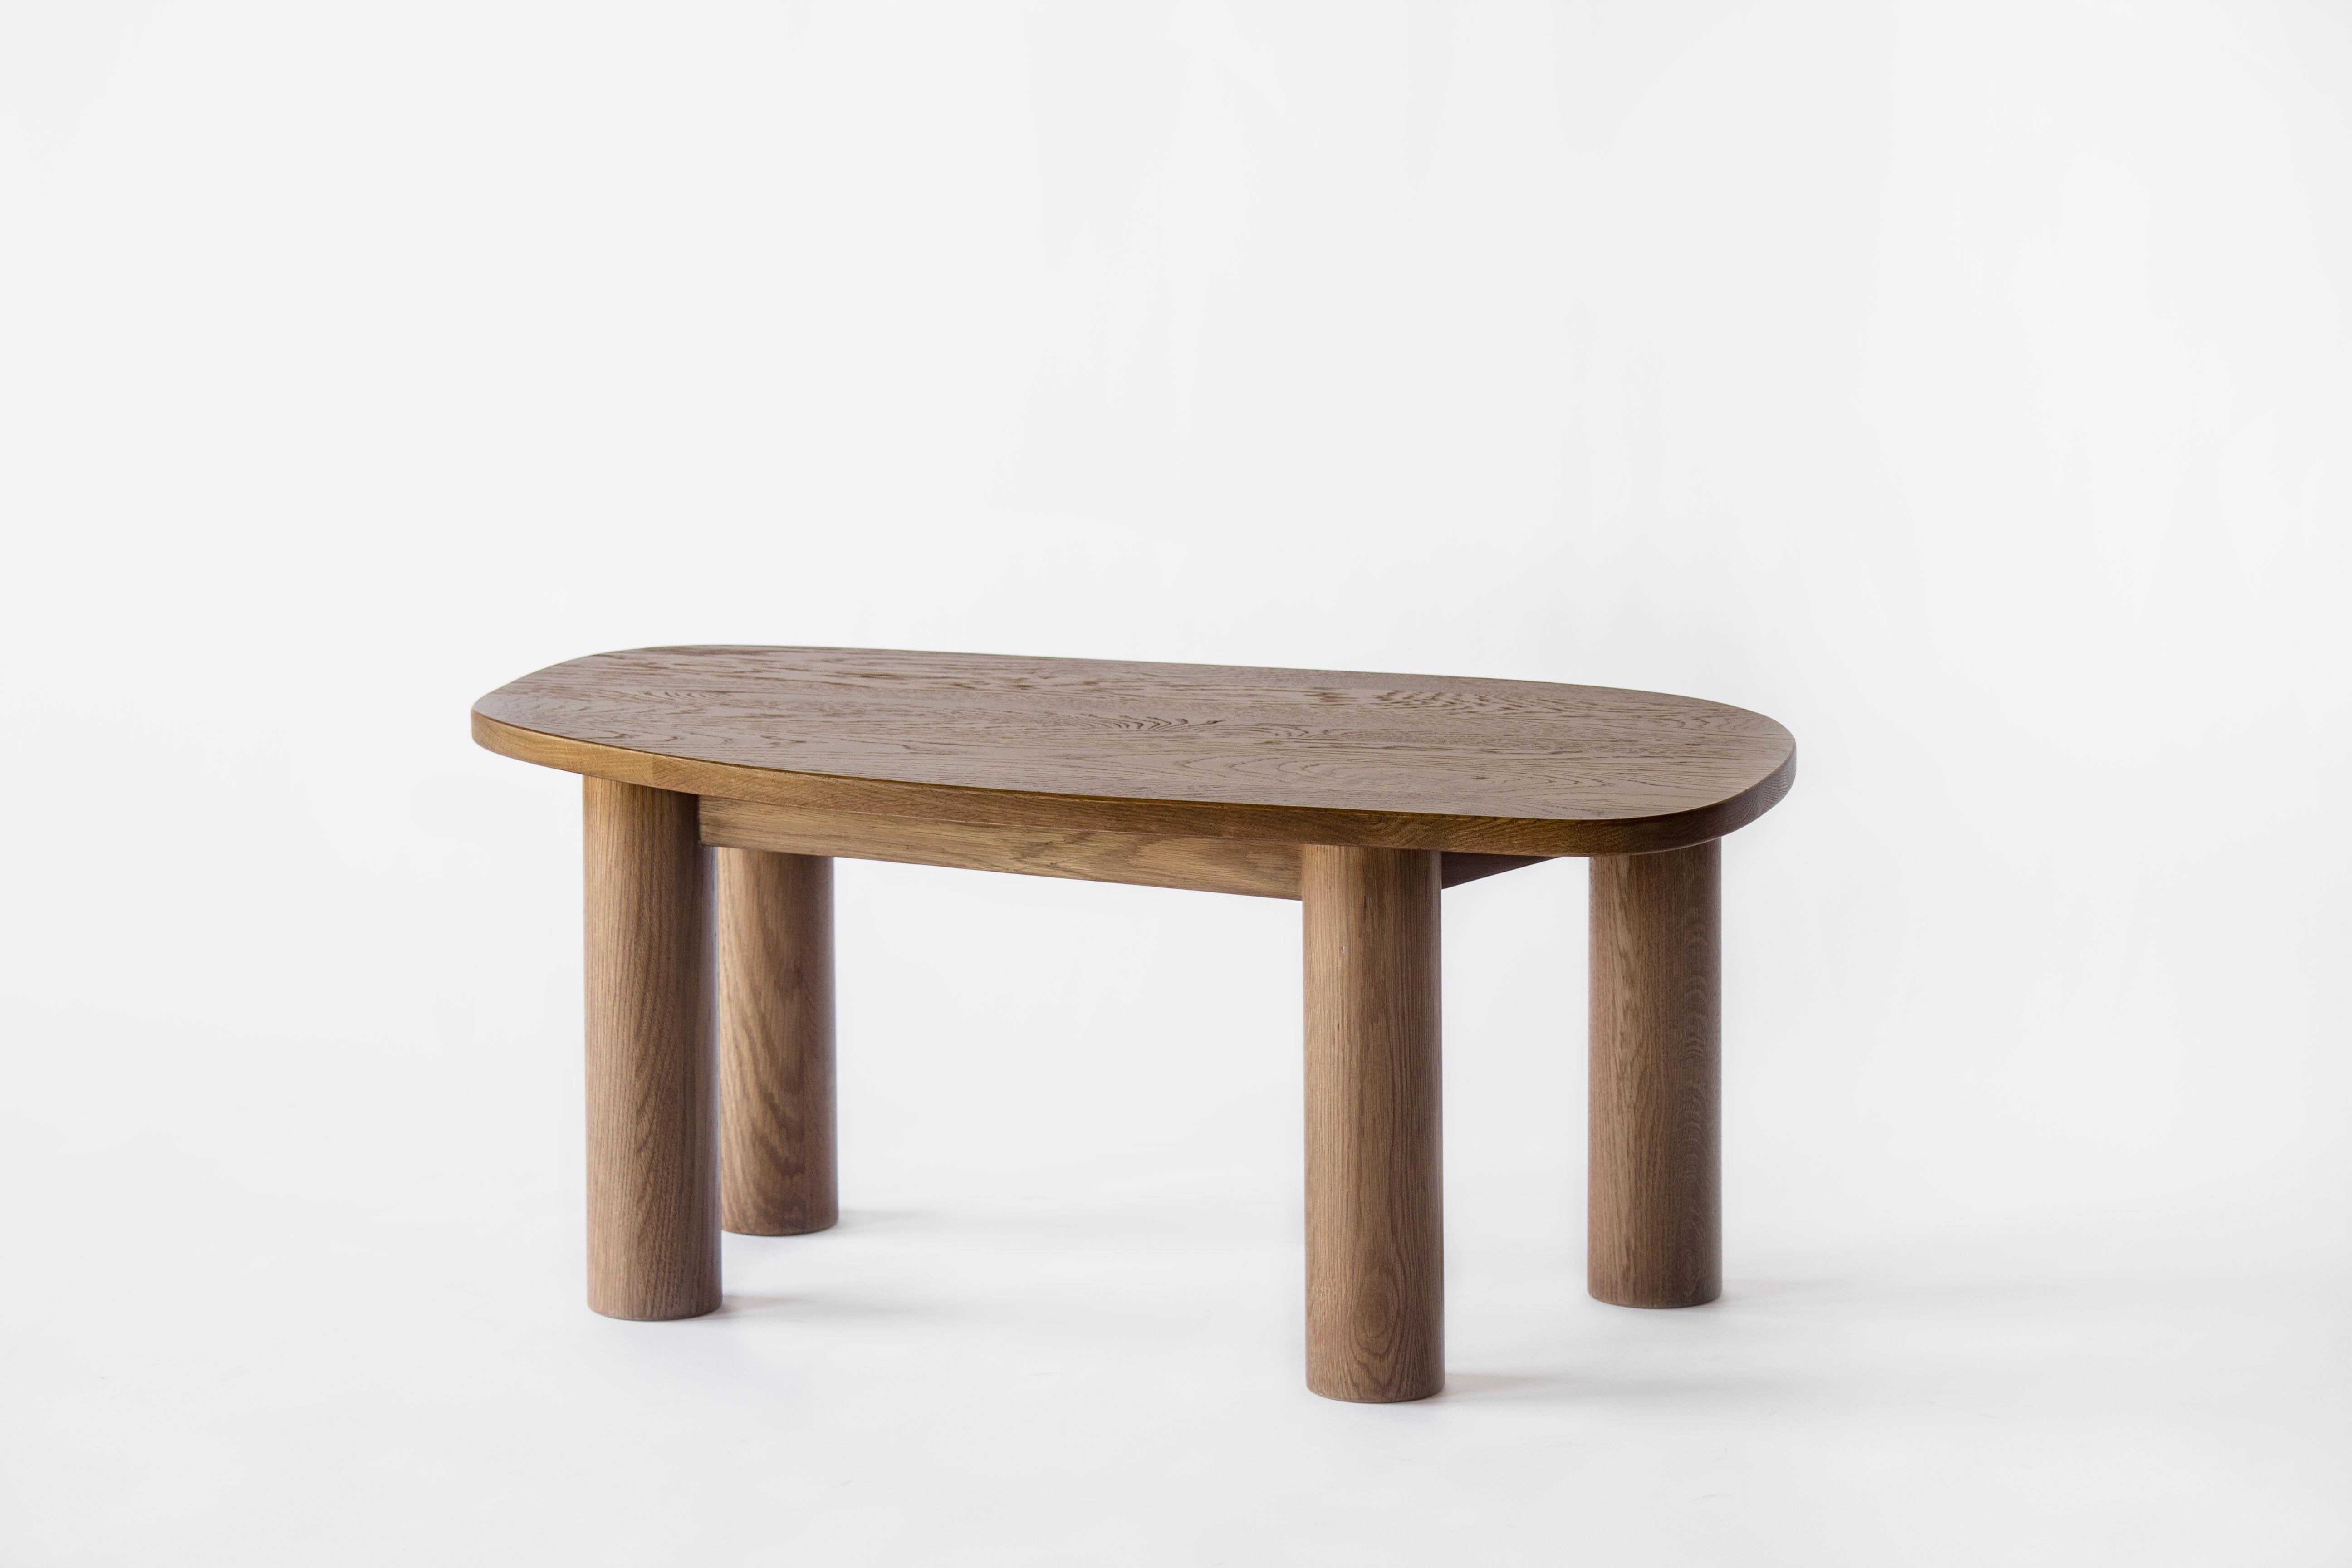 Sun at Six est un studio de conception de mobilier contemporain qui travaille avec des maîtres menuisiers chinois traditionnels pour fabriquer ses pièces à la main en utilisant la menuiserie traditionnelle. Notre table basse Classic est simple,